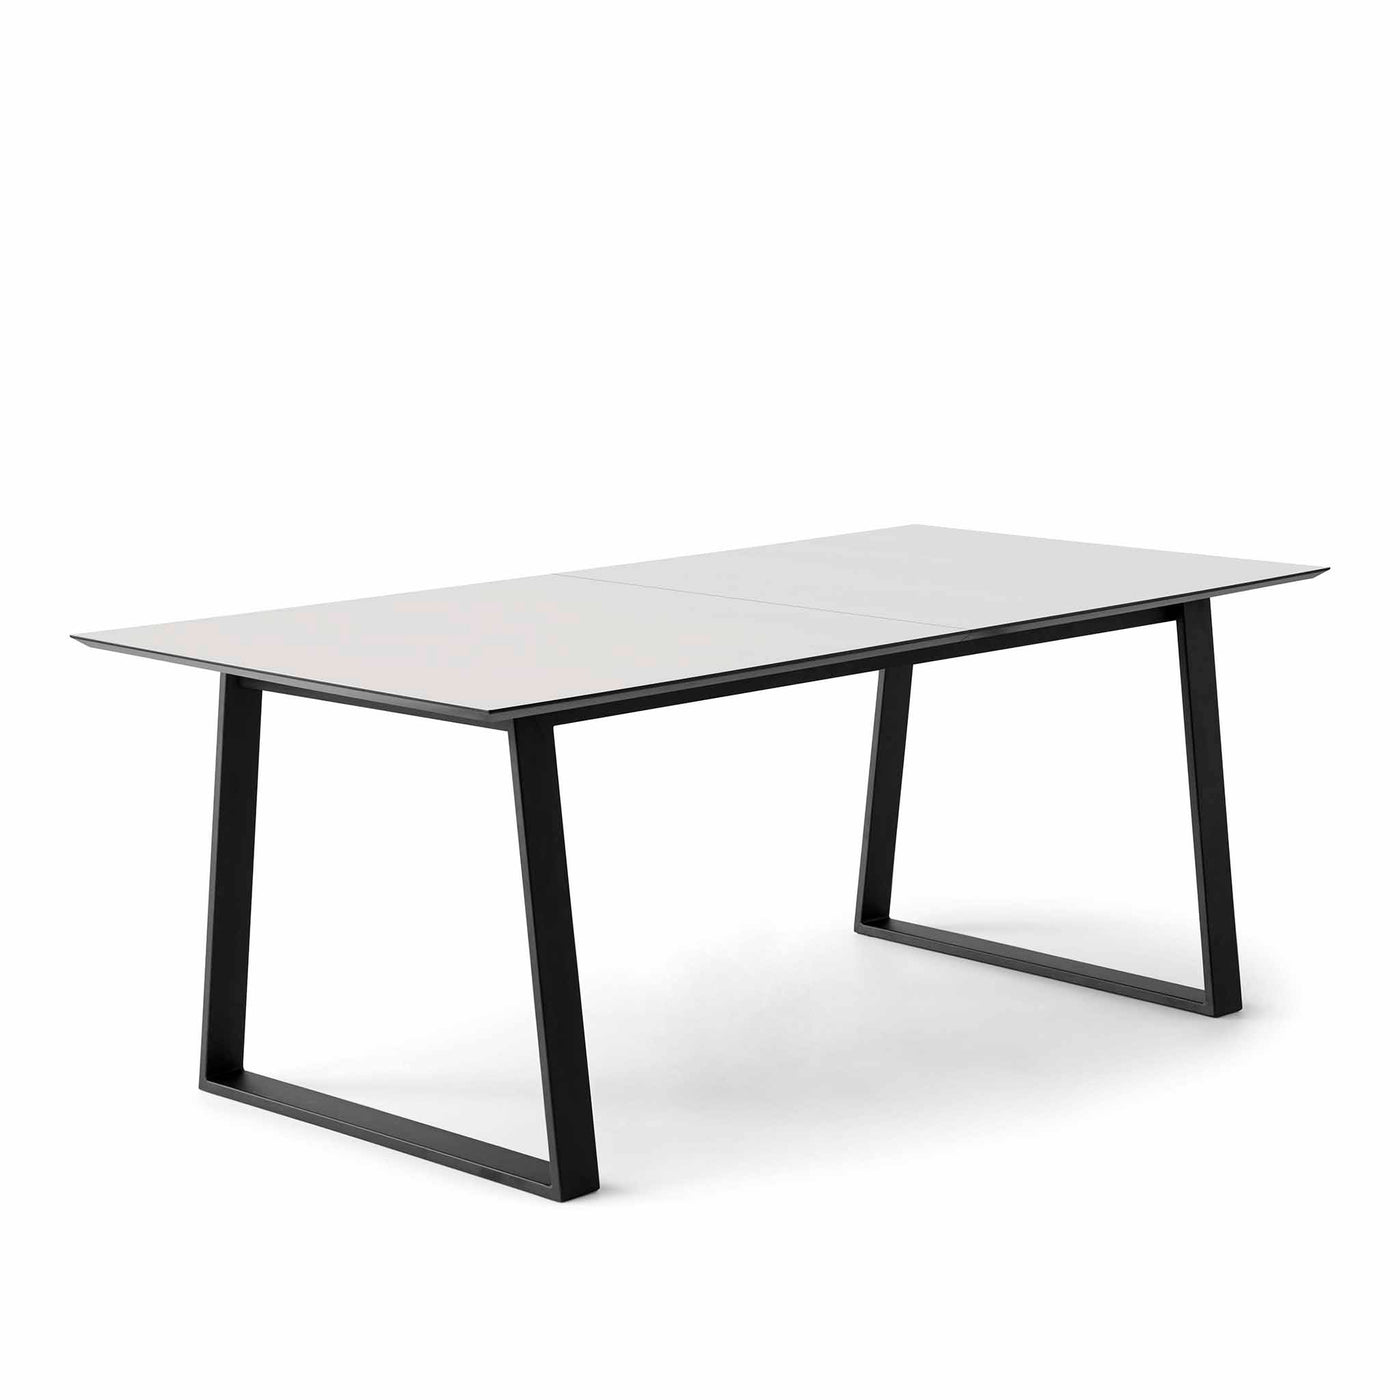 Meza by Hammel Square spisebord med bordplade i hvid laminat og trapez stel i sort pulverlakeret metal.